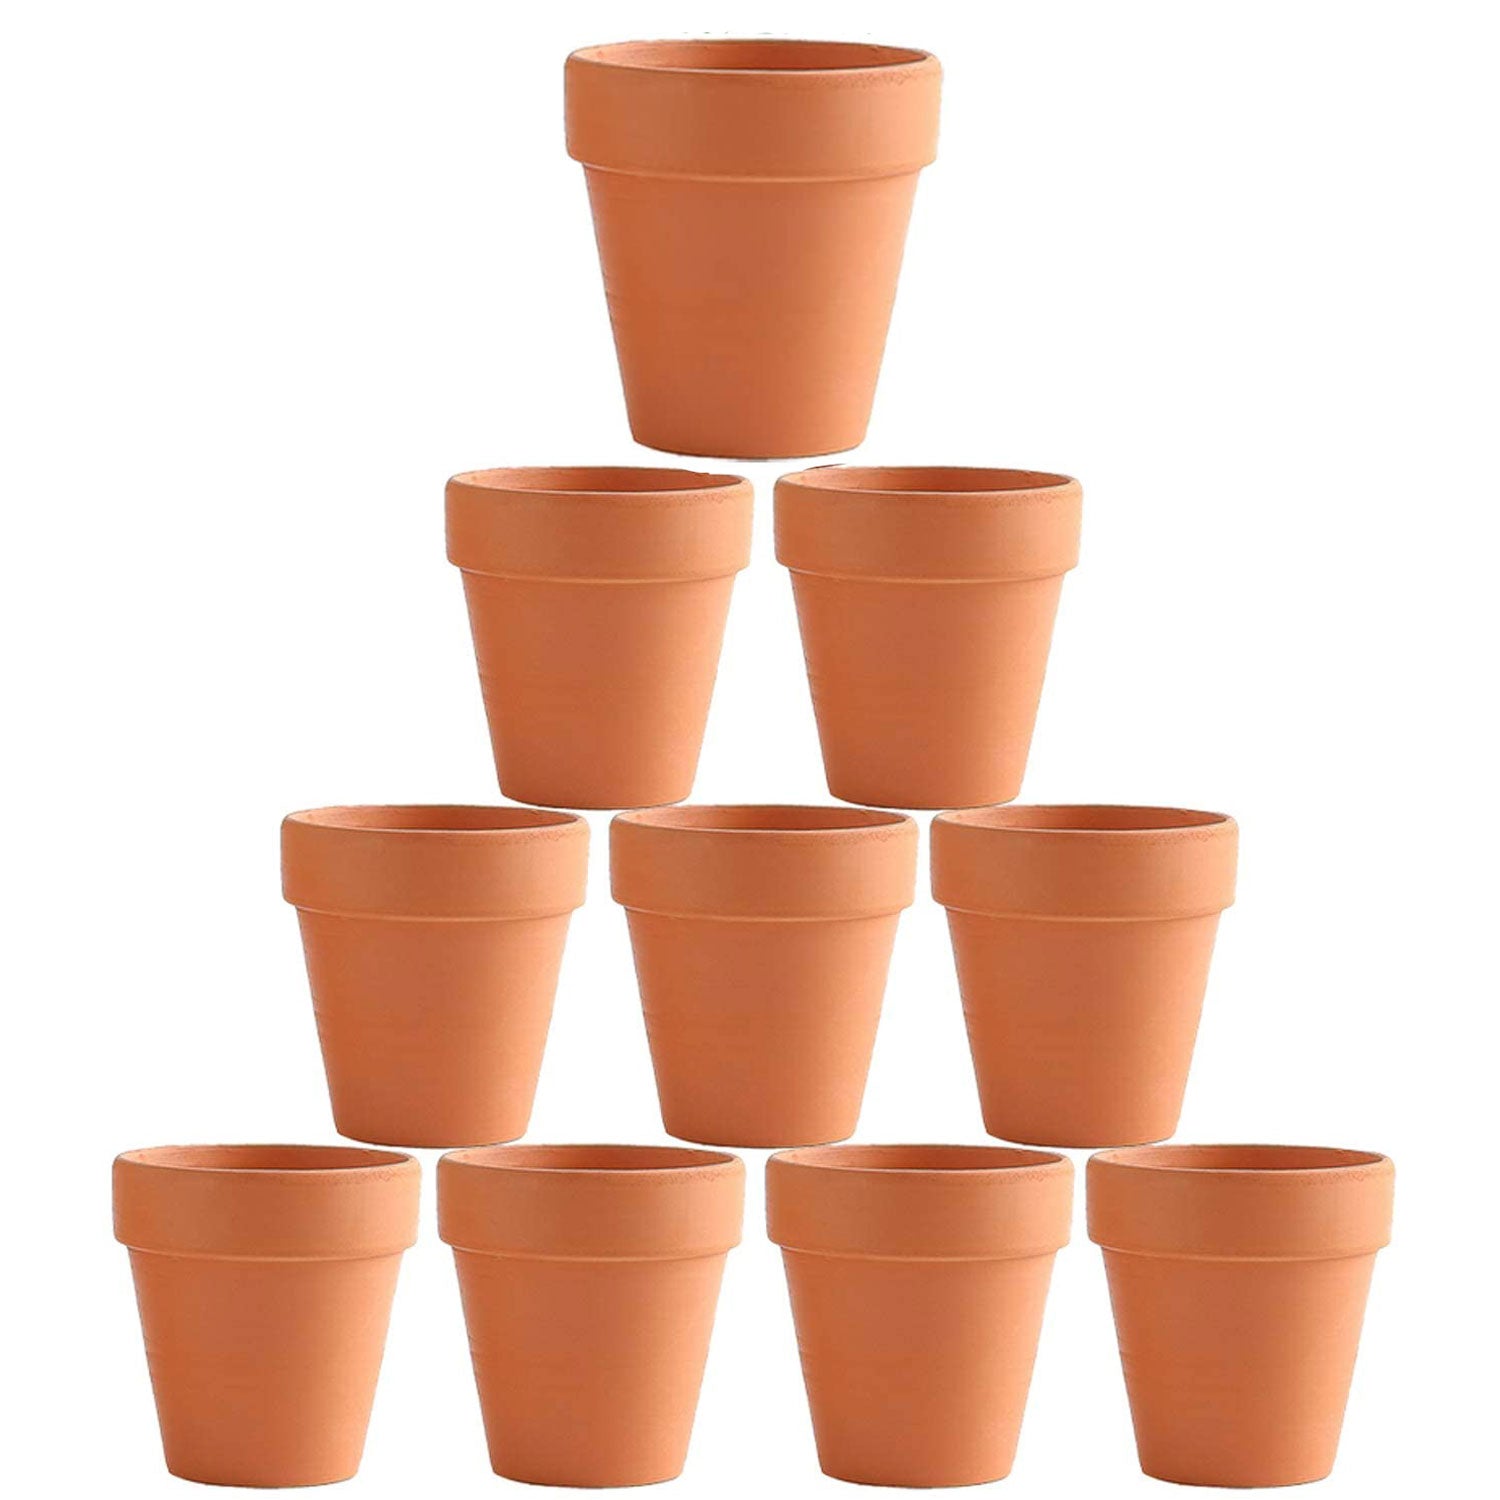 10x 8cm Flower Pot Pots Clay Ceramic Plant Drain Hole Succulent Cactus Nursery Planter